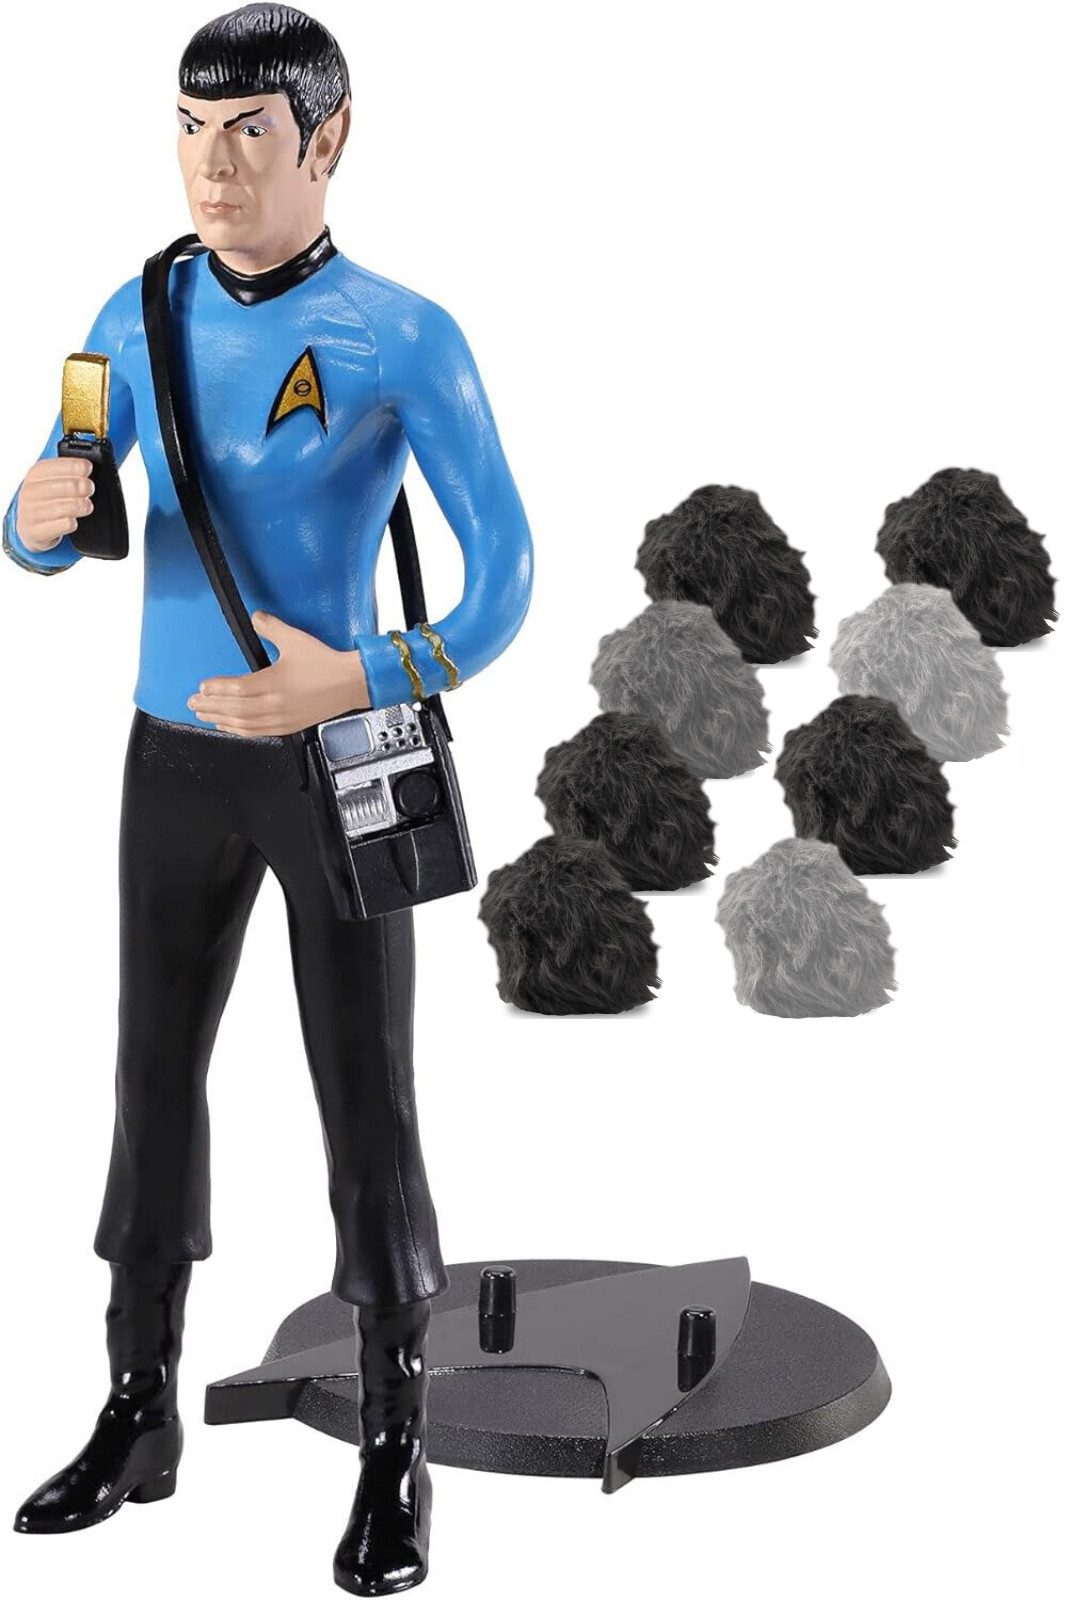 Noble Collection Actionfigur Mr. Spock (beweglich) mit Tribbles Figur und Zubehör